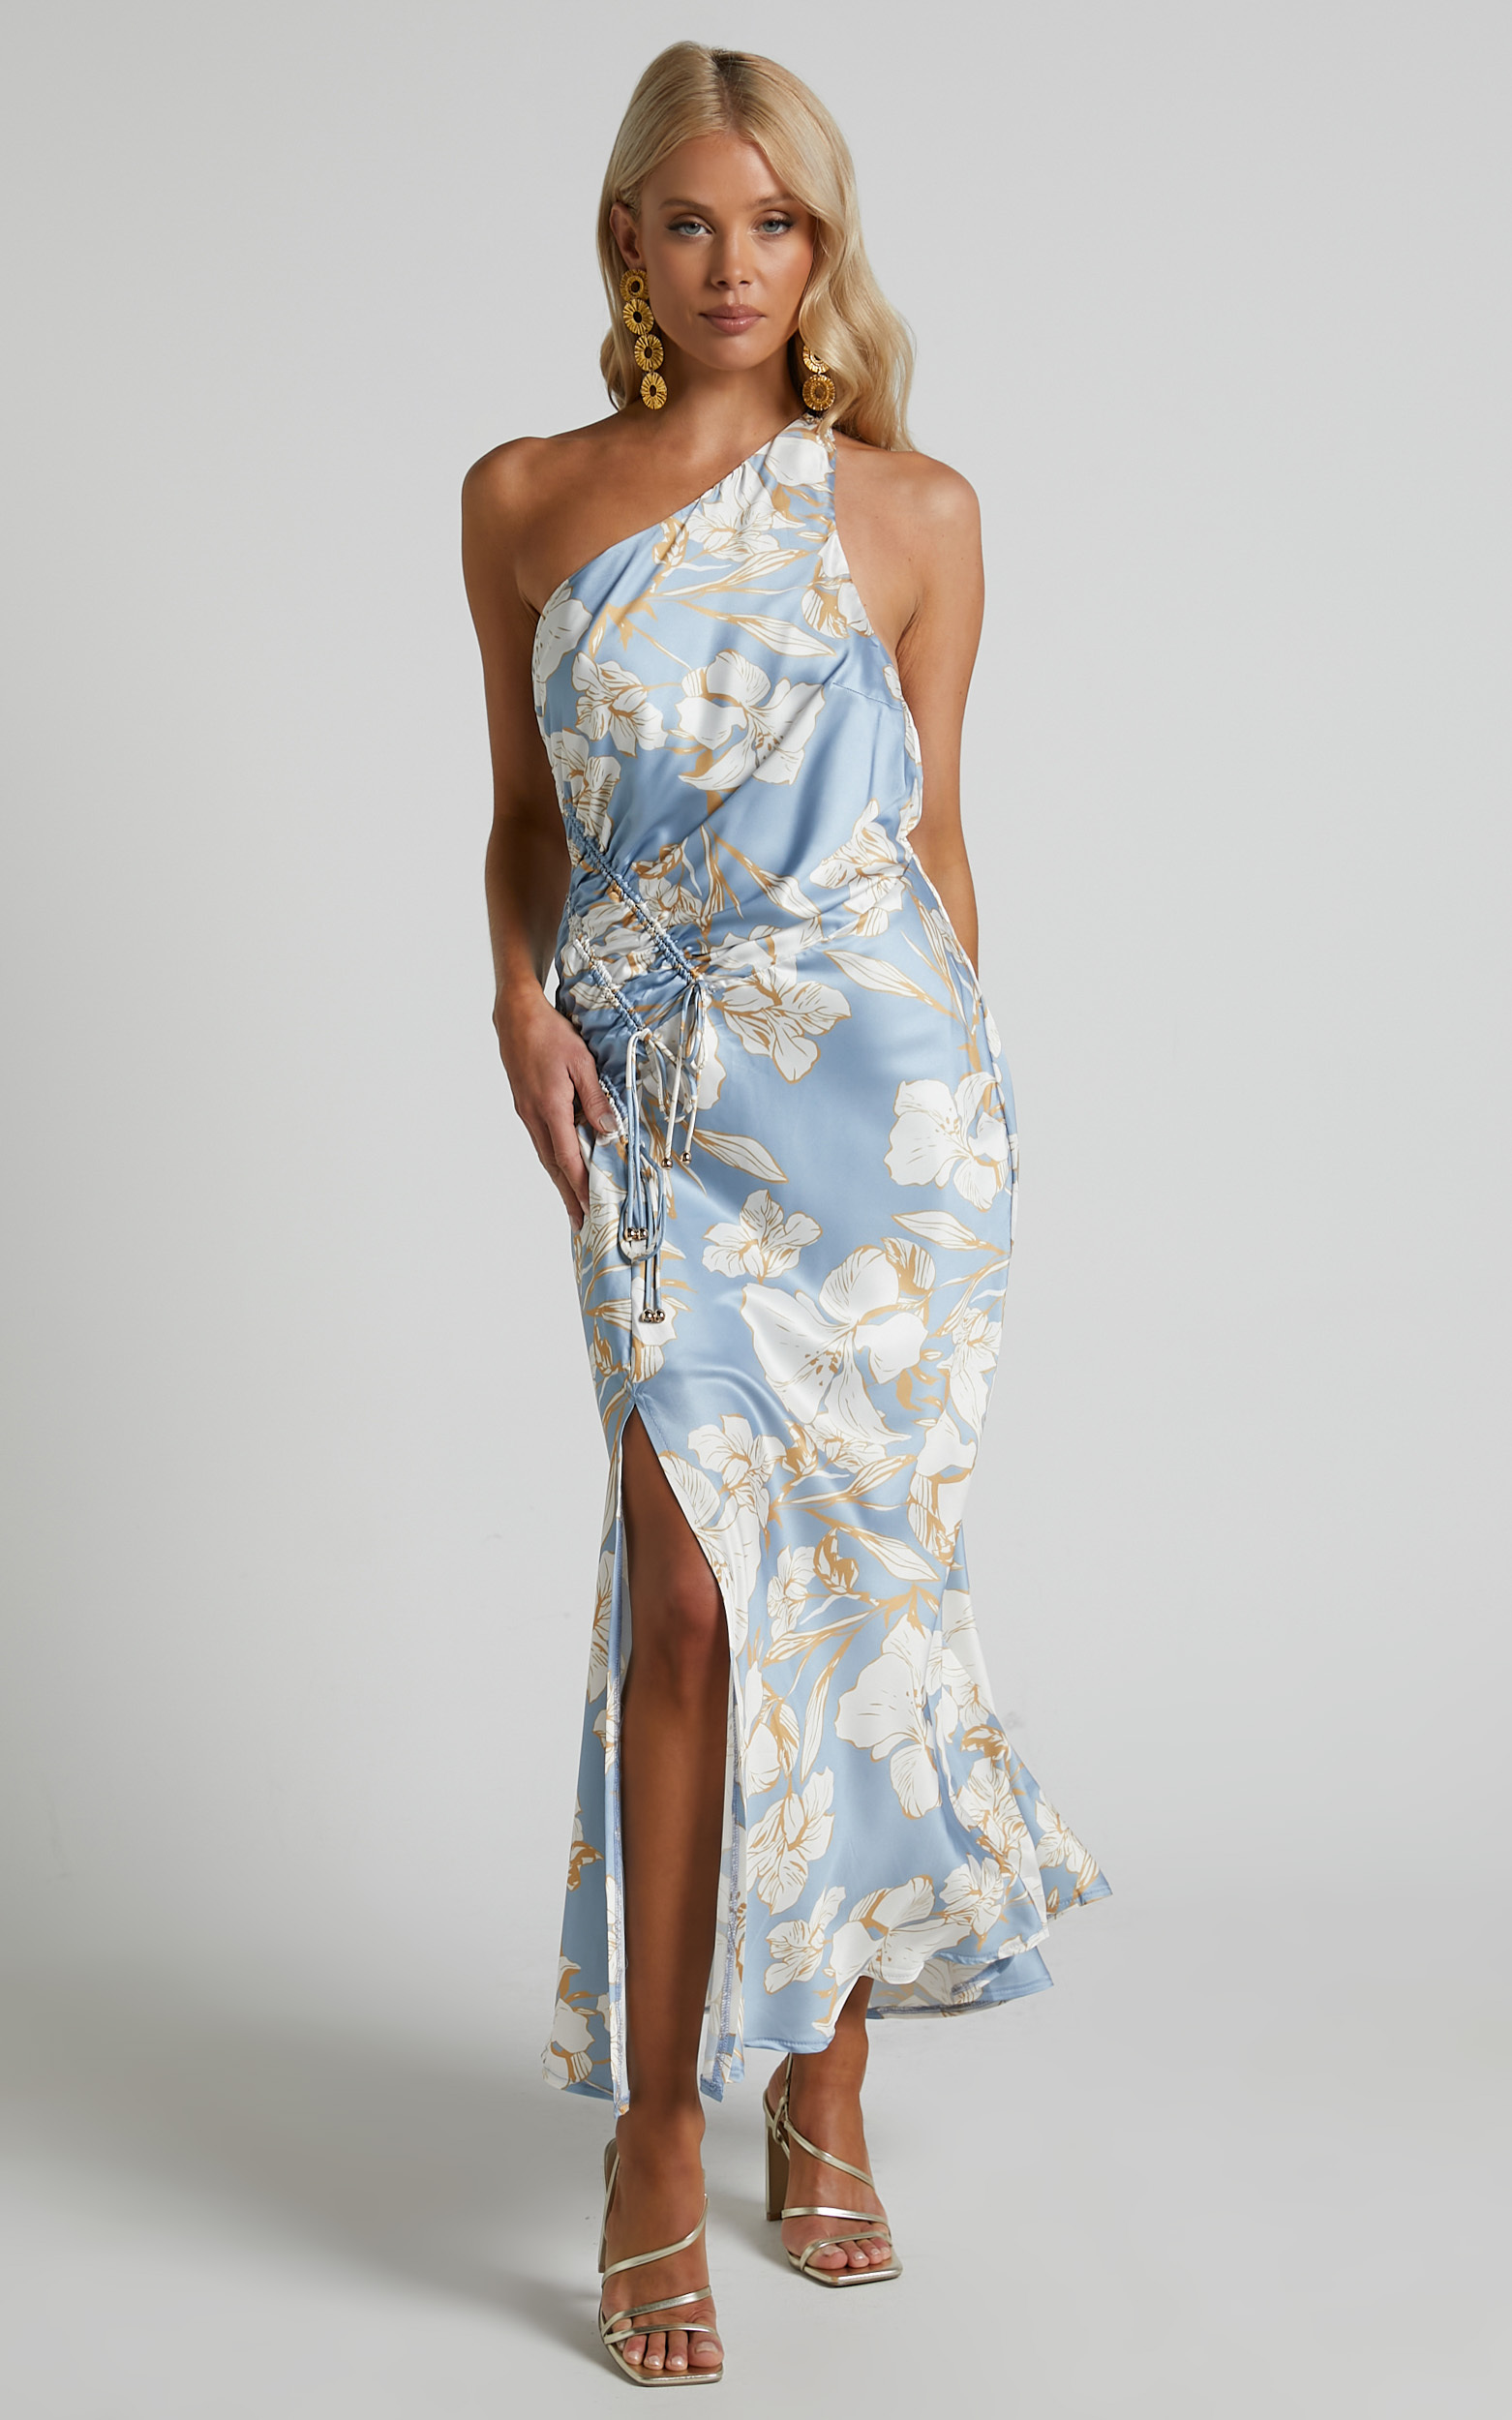 Surene One Shoulder Side Ruched Split Satin Midi Dress in Blue Floral - 06, BLU1, hi-res image number null